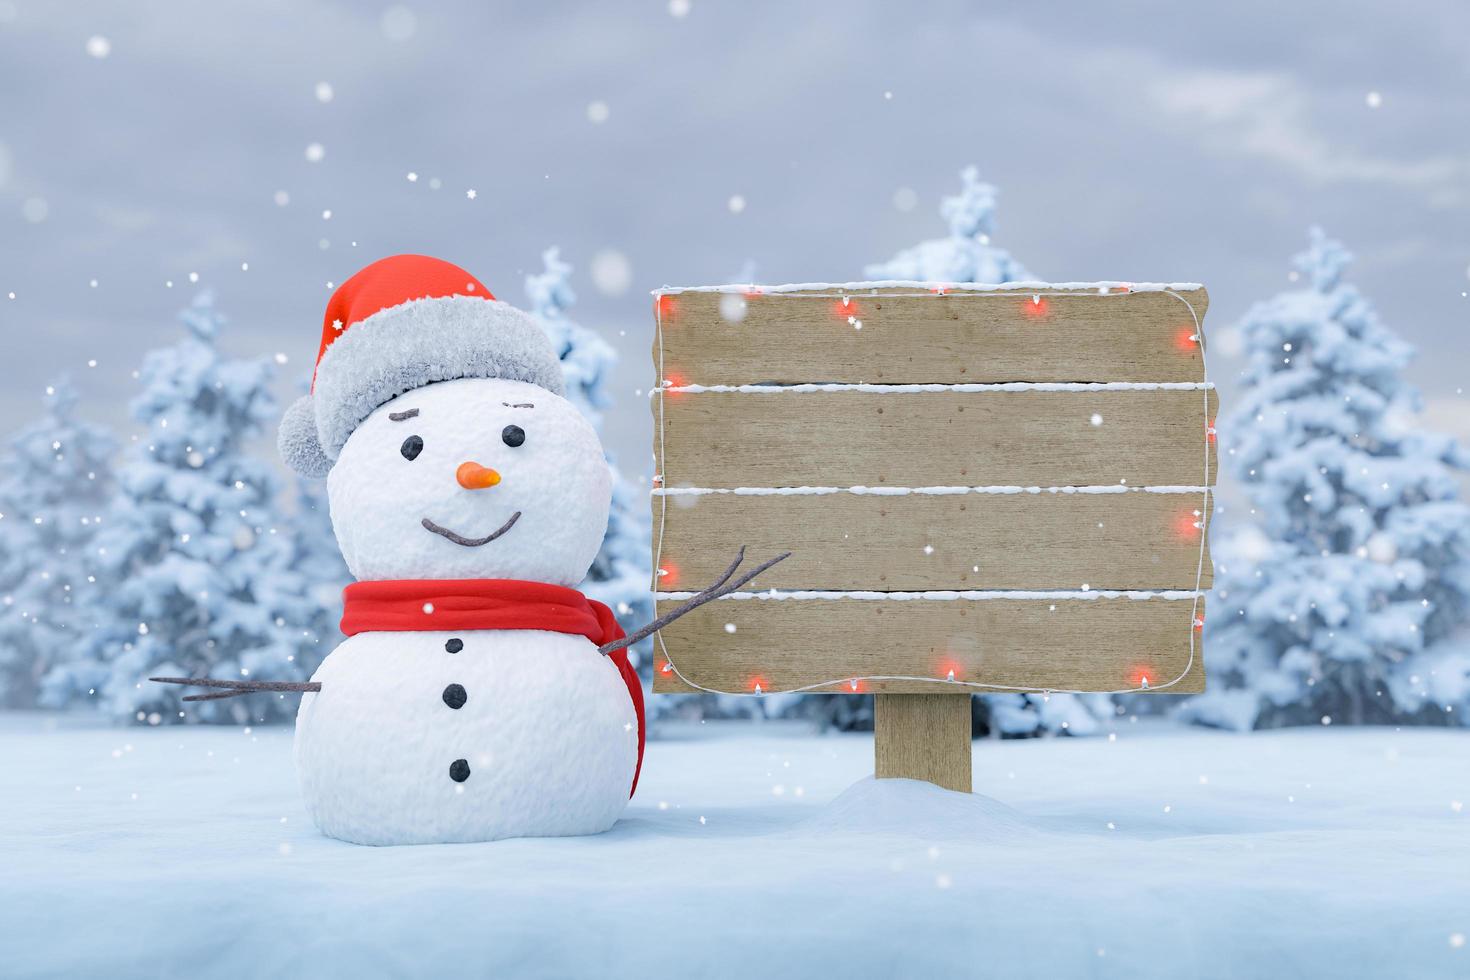 Plakat in einer verschneiten Landschaft mit einem Schneemann foto